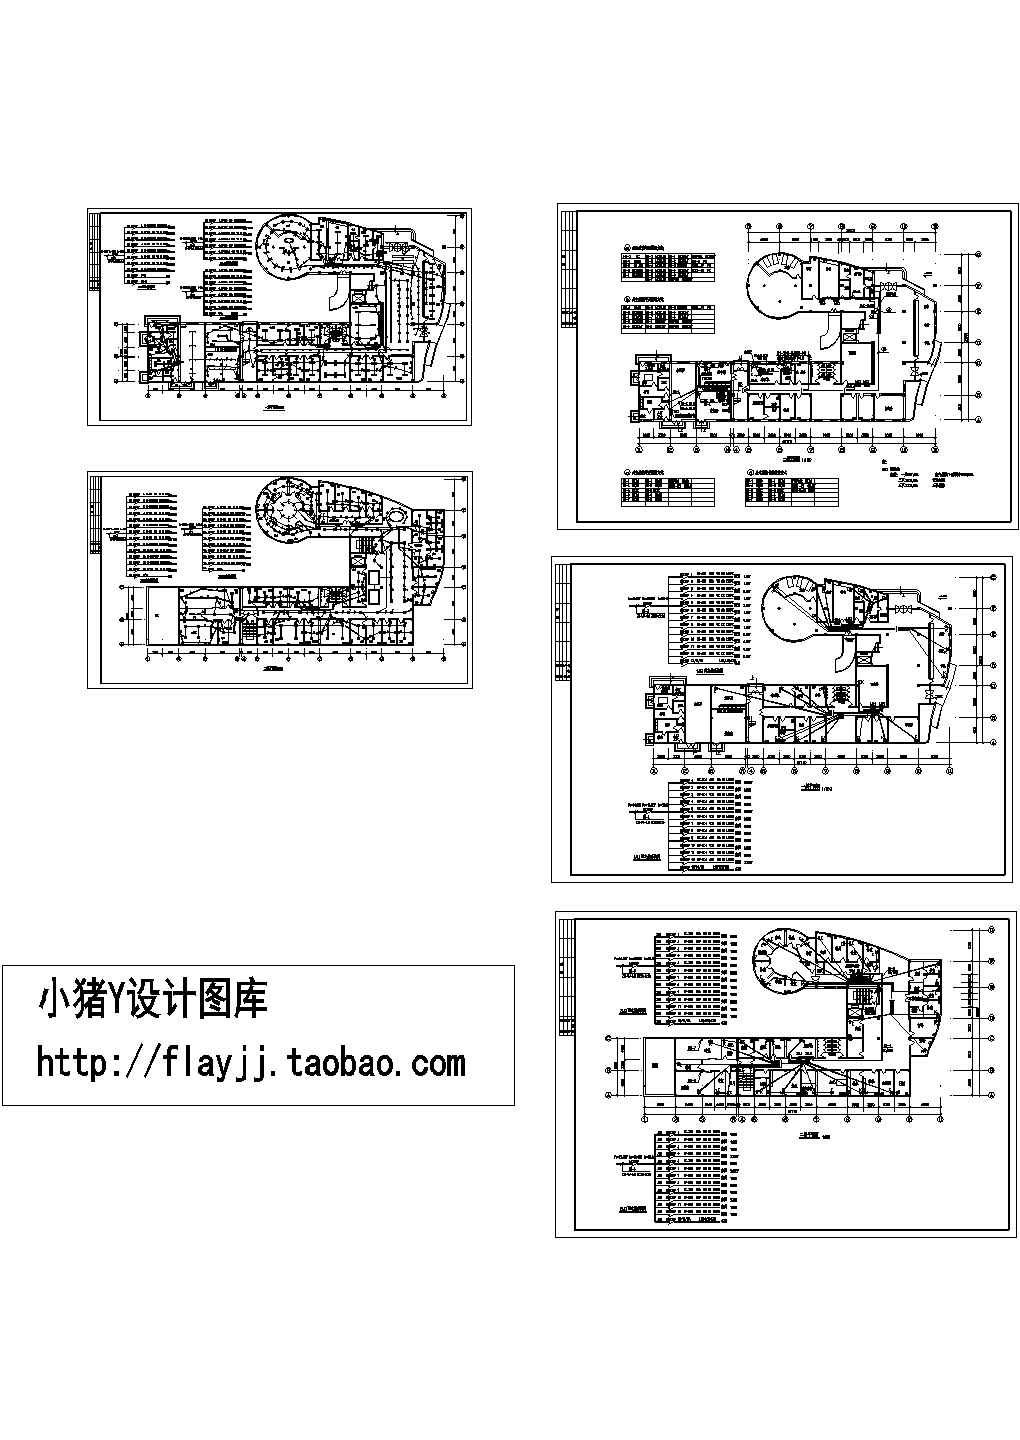 某医院两层综合楼电气设计施工图【各层平面图及配电箱系统图 设备材料清单 2个CAD文件】